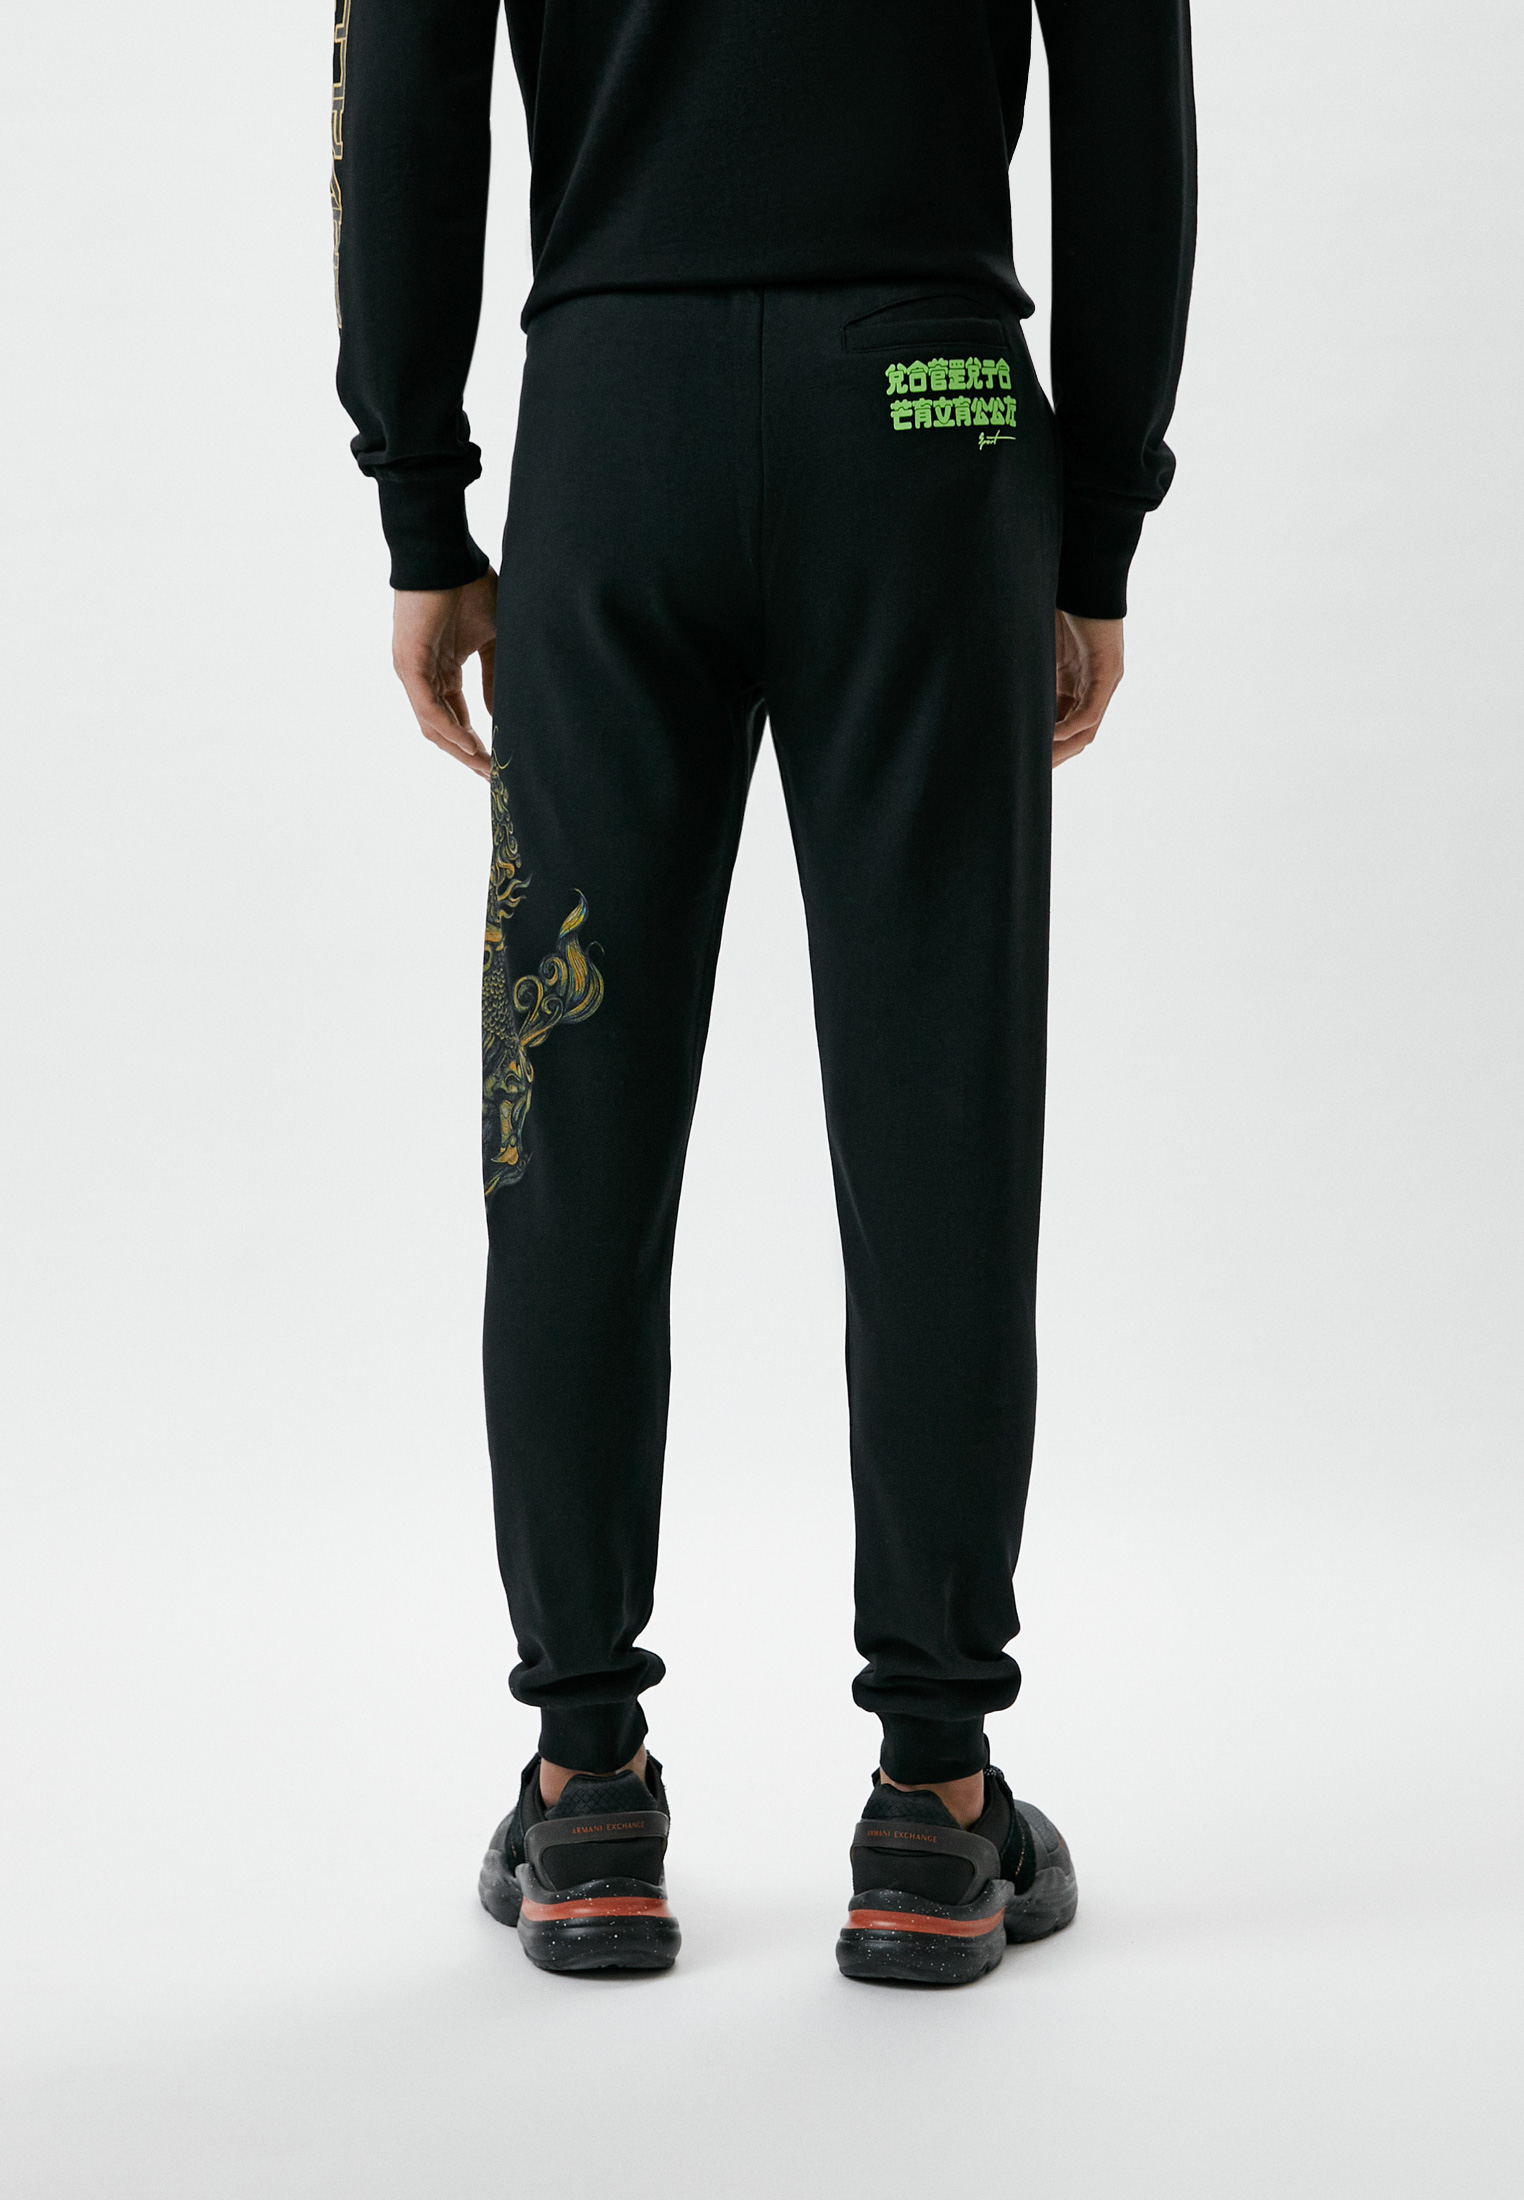 Мужские спортивные брюки Roberto Cavalli (Роберто Кавалли) KYX25PCF114: изображение 3